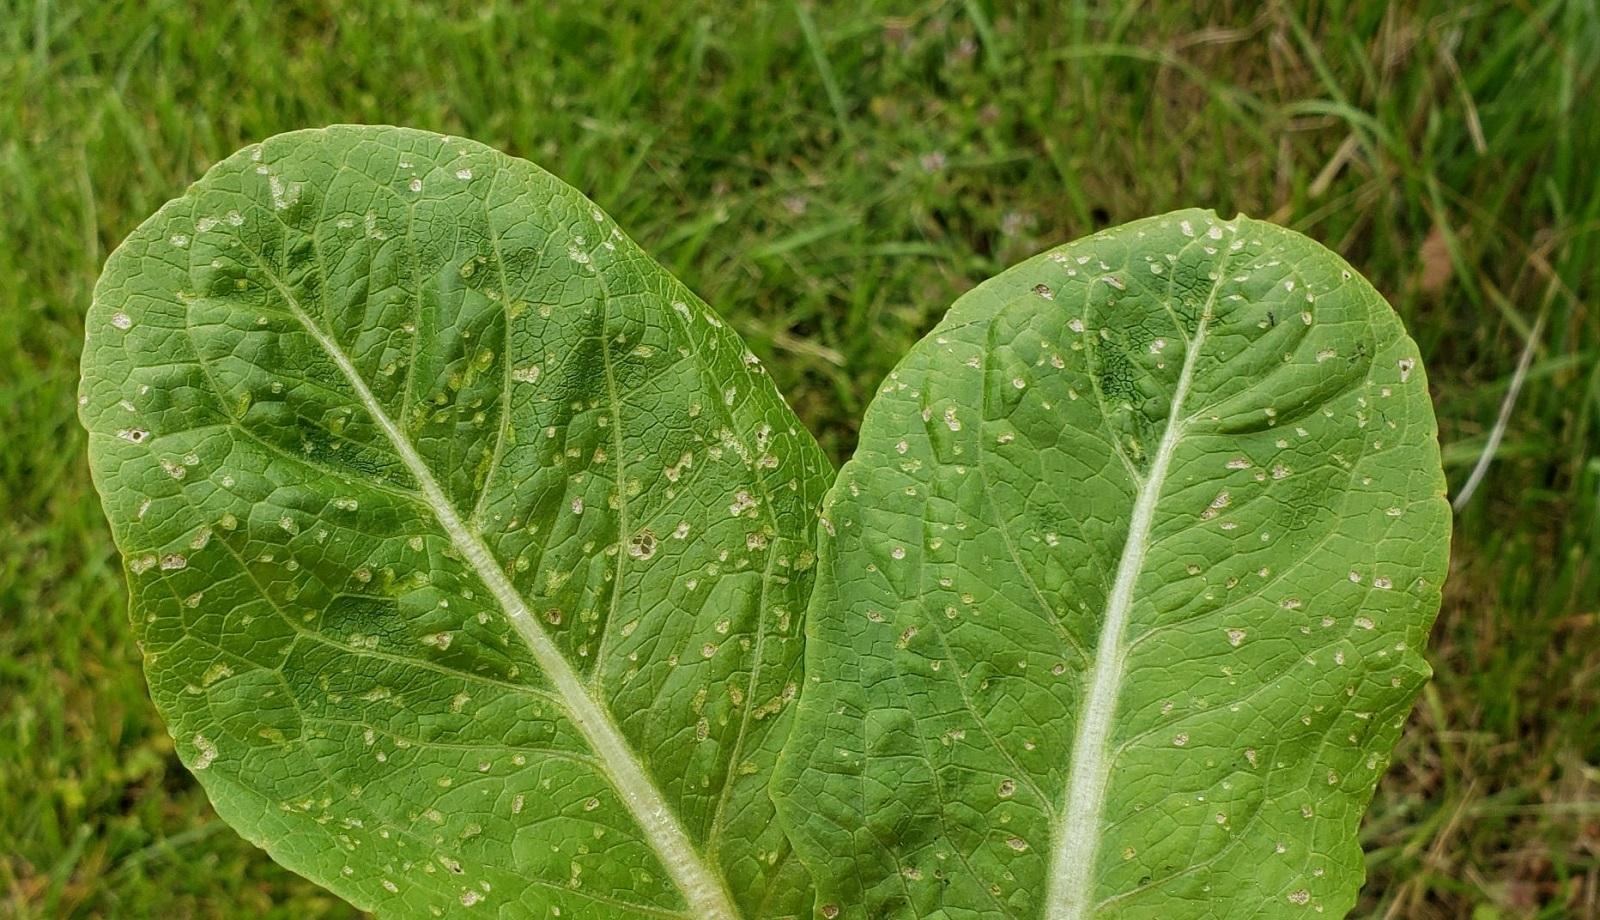 edema on romaine lettuce leaves 